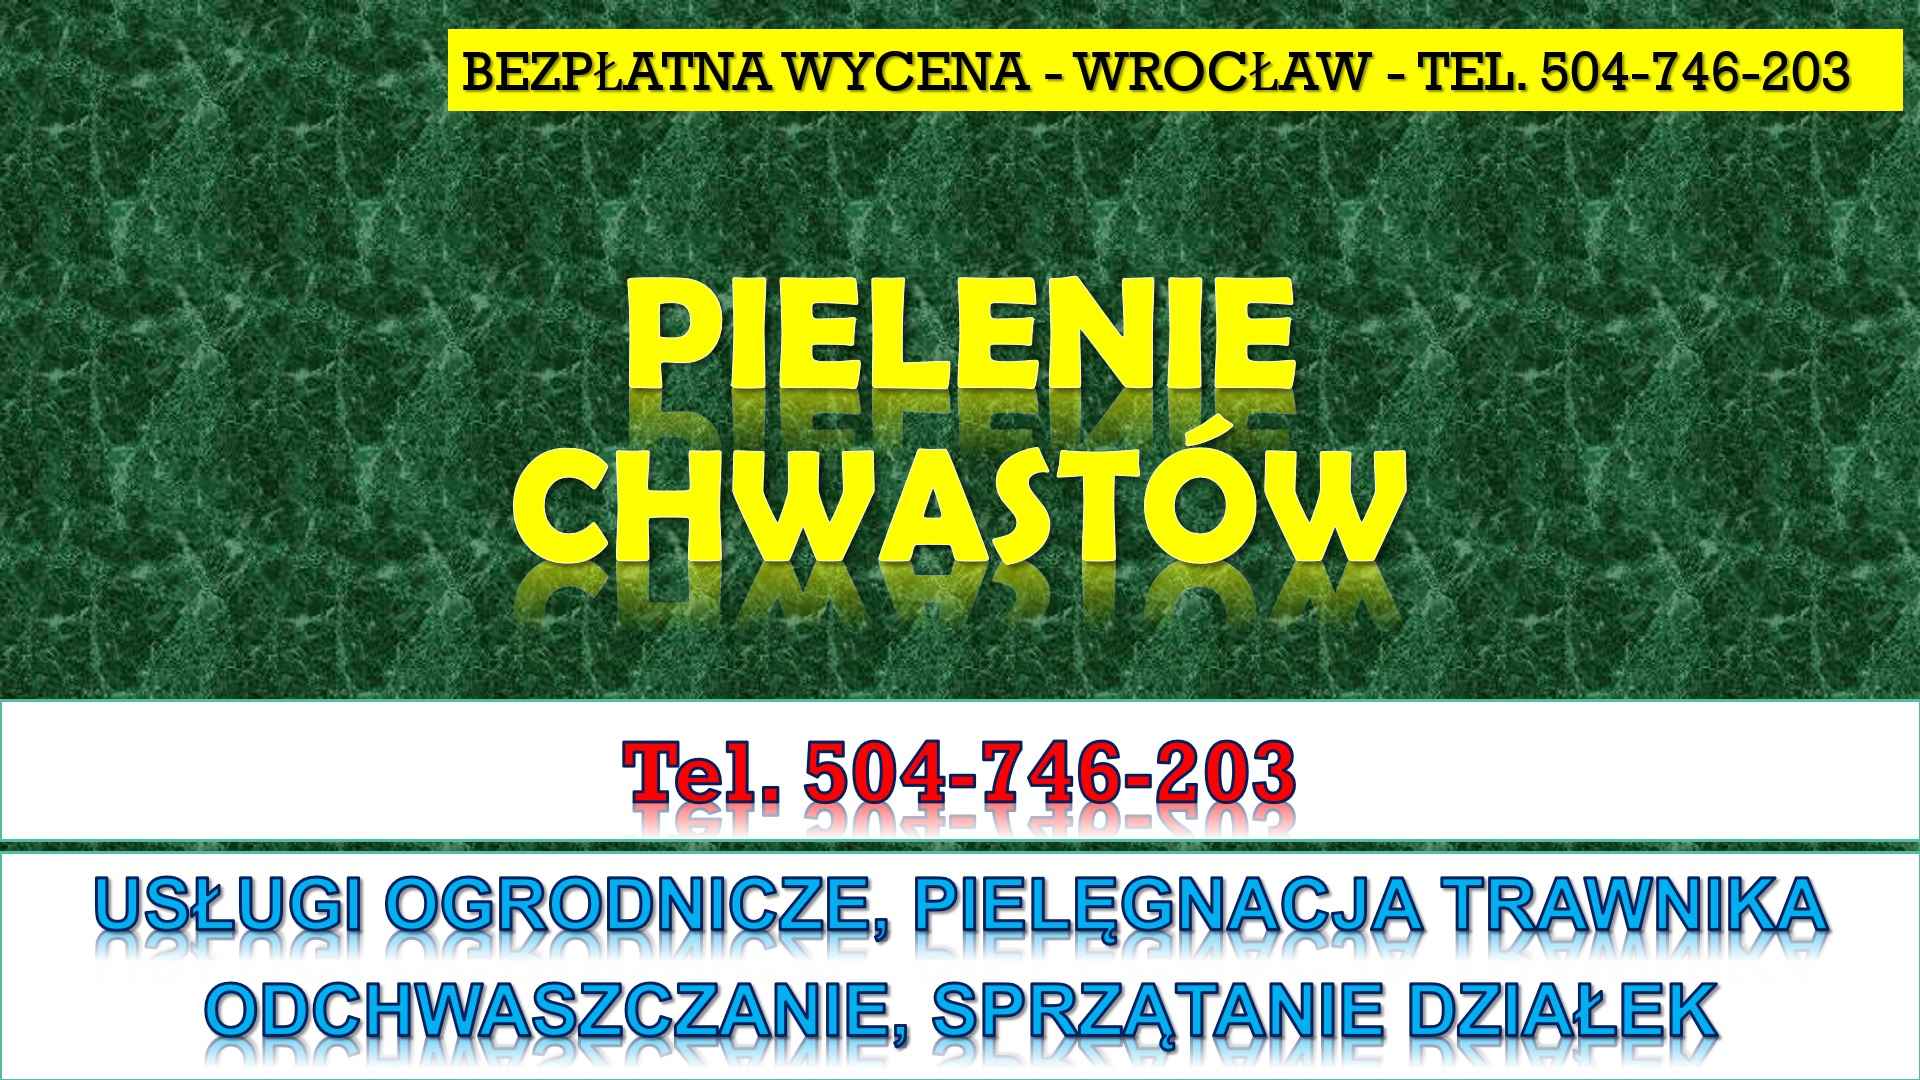 Pielenie działki, cena, tel. 504-746-203. Wrocław. Odchwaszczenie. Psie Pole - zdjęcie 2